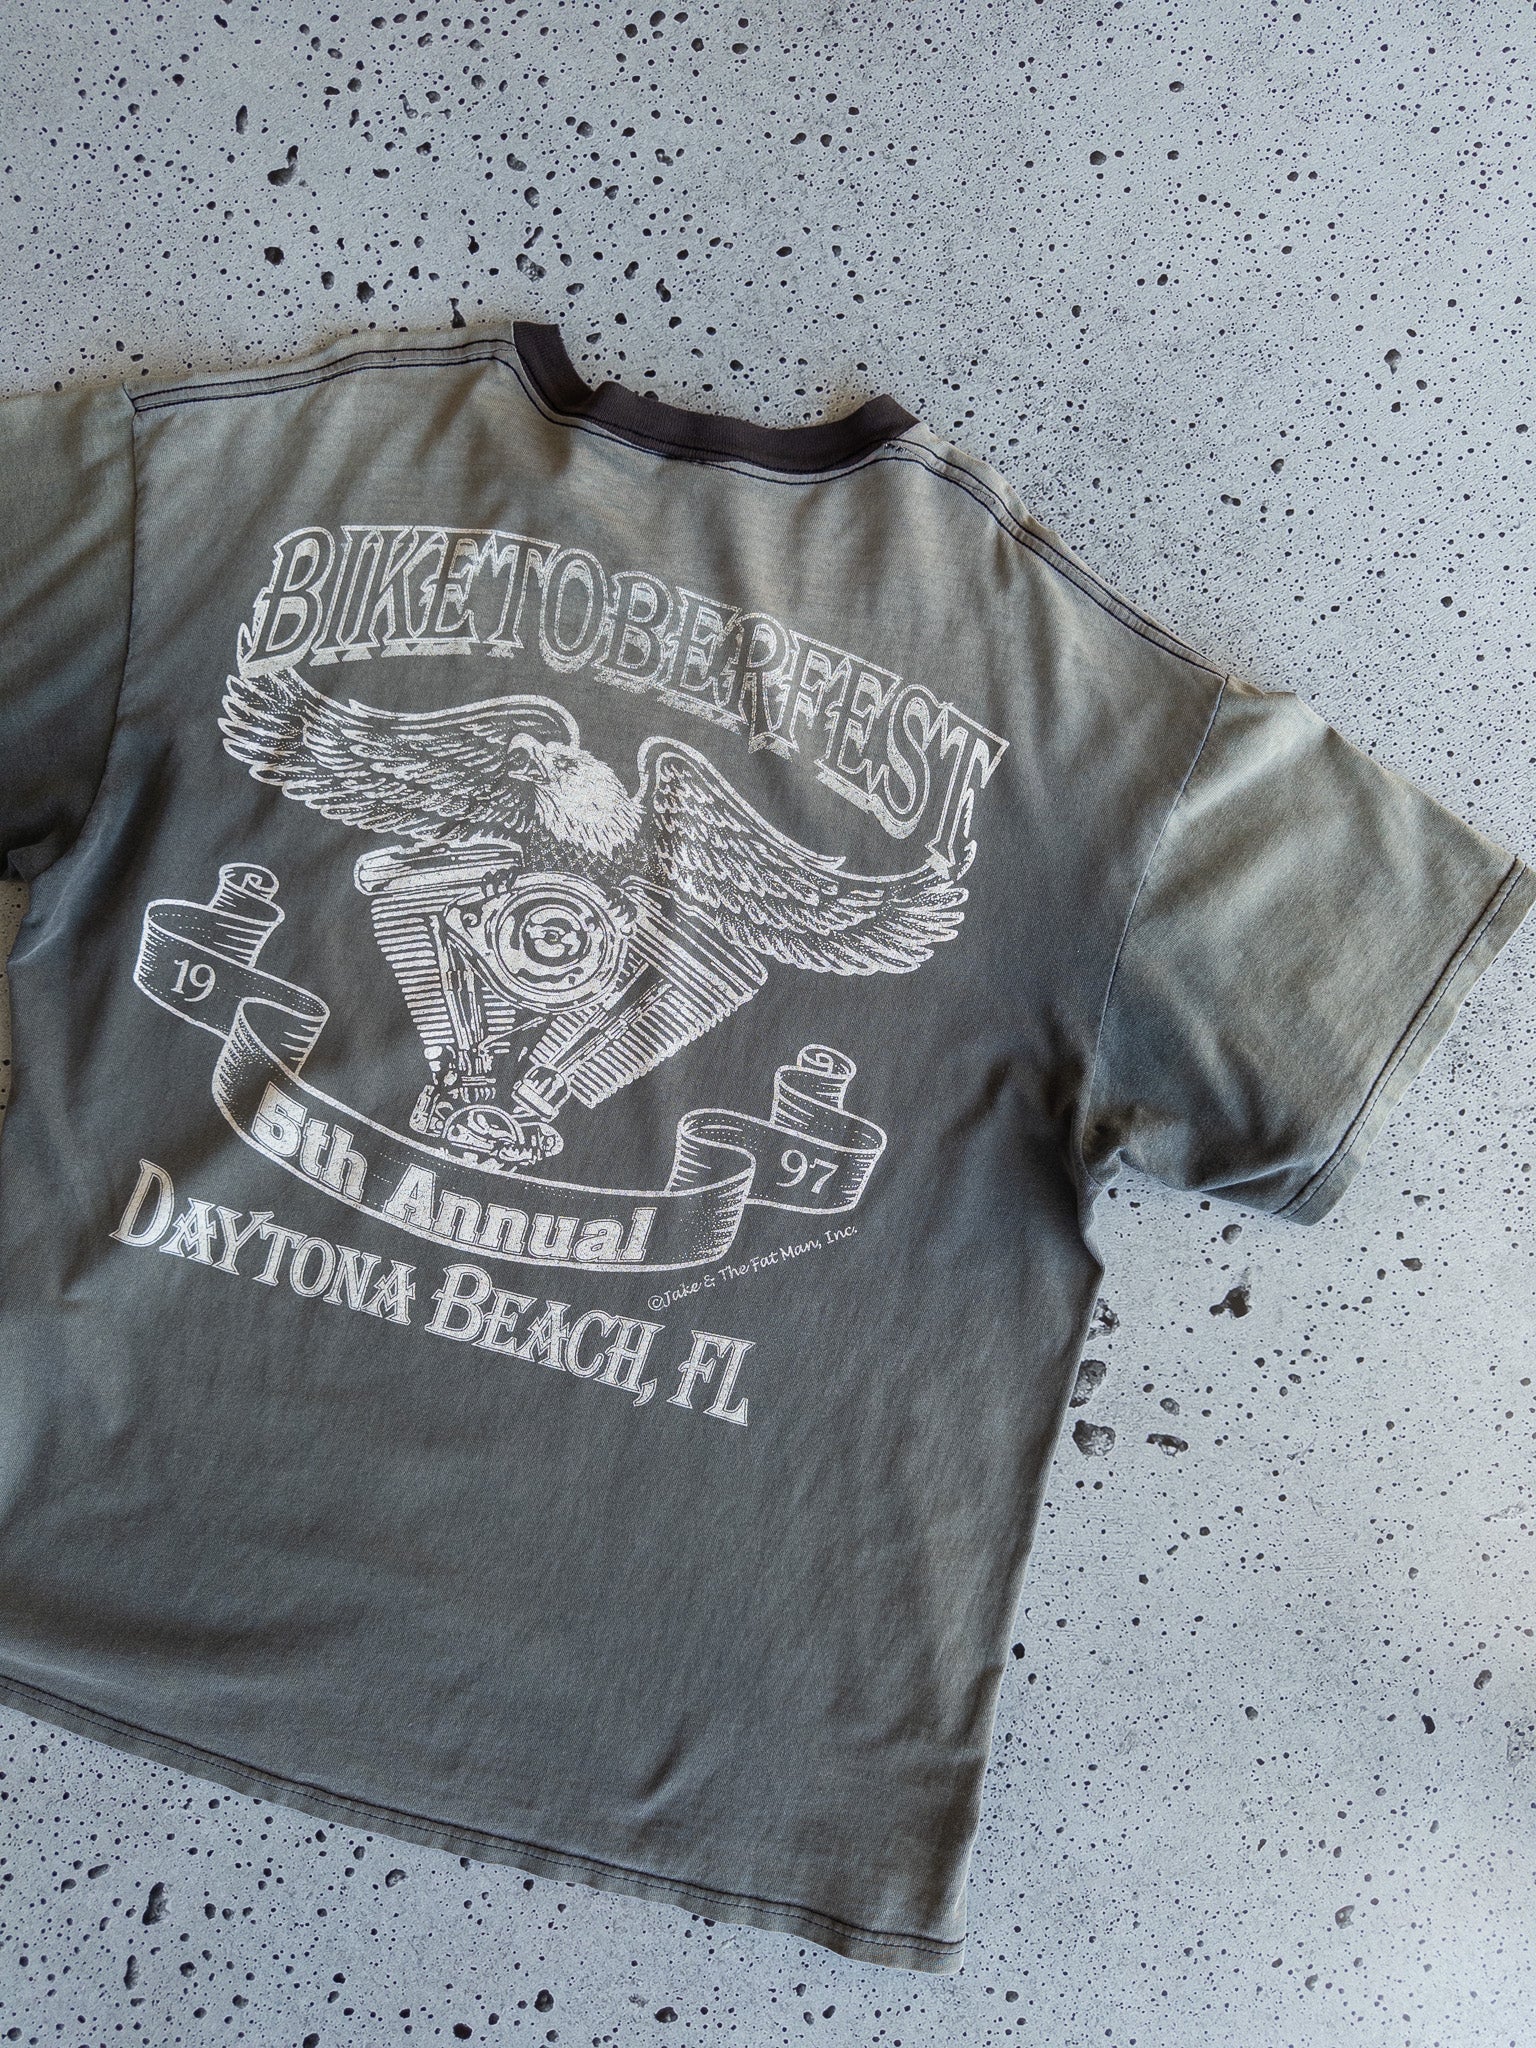 Vintage Biketoberfest 1997 Daytona Beach Tee (XL)